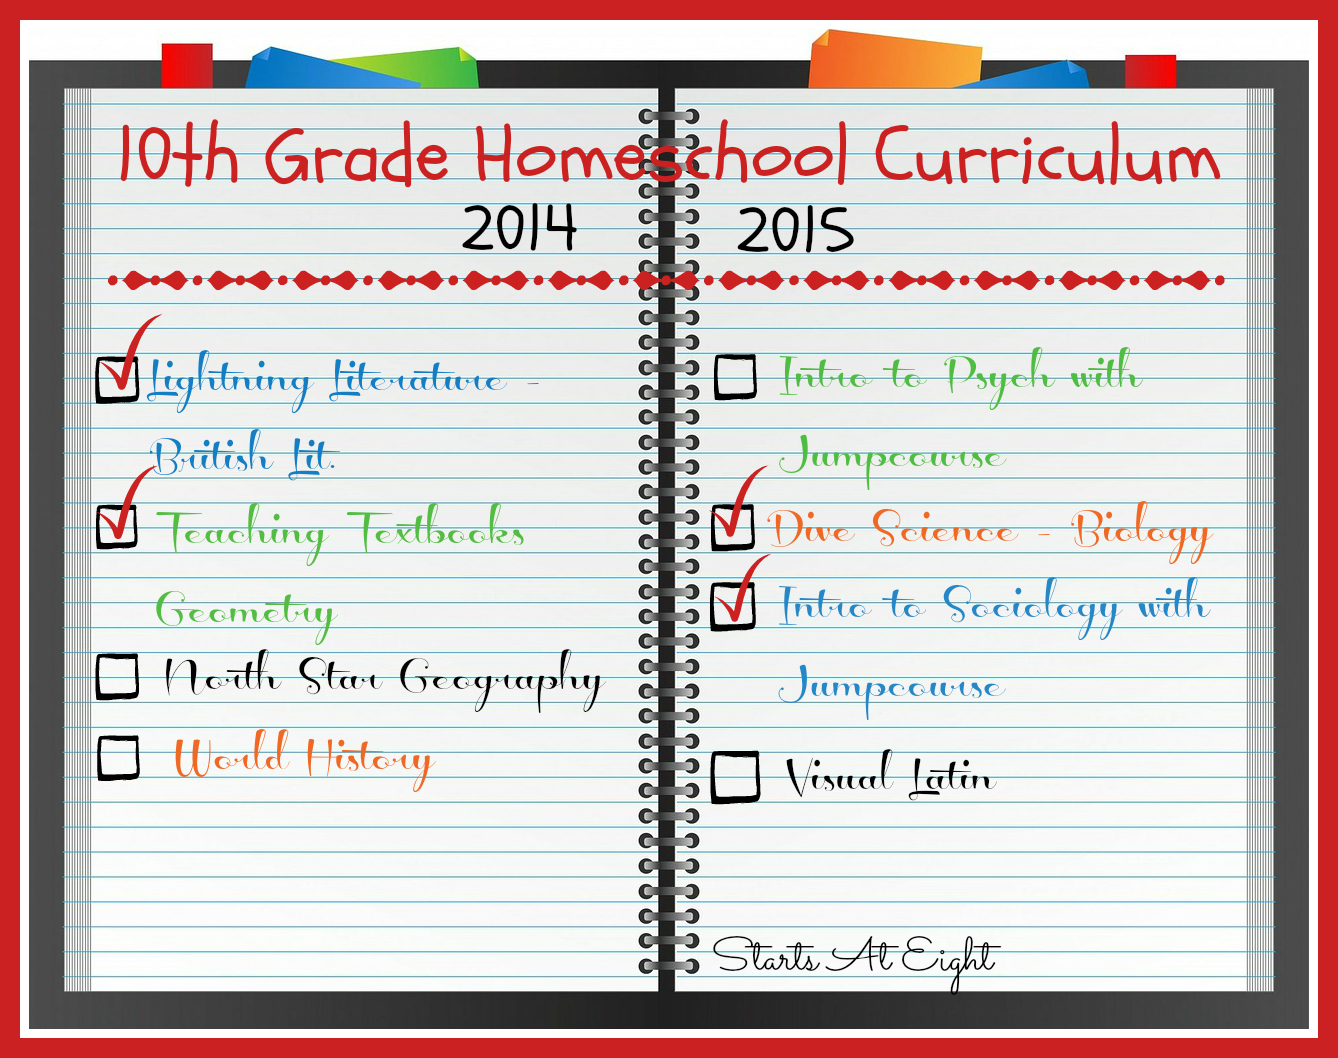 10th Grade Homeschool Curriculum 2014 2015 Startsateight